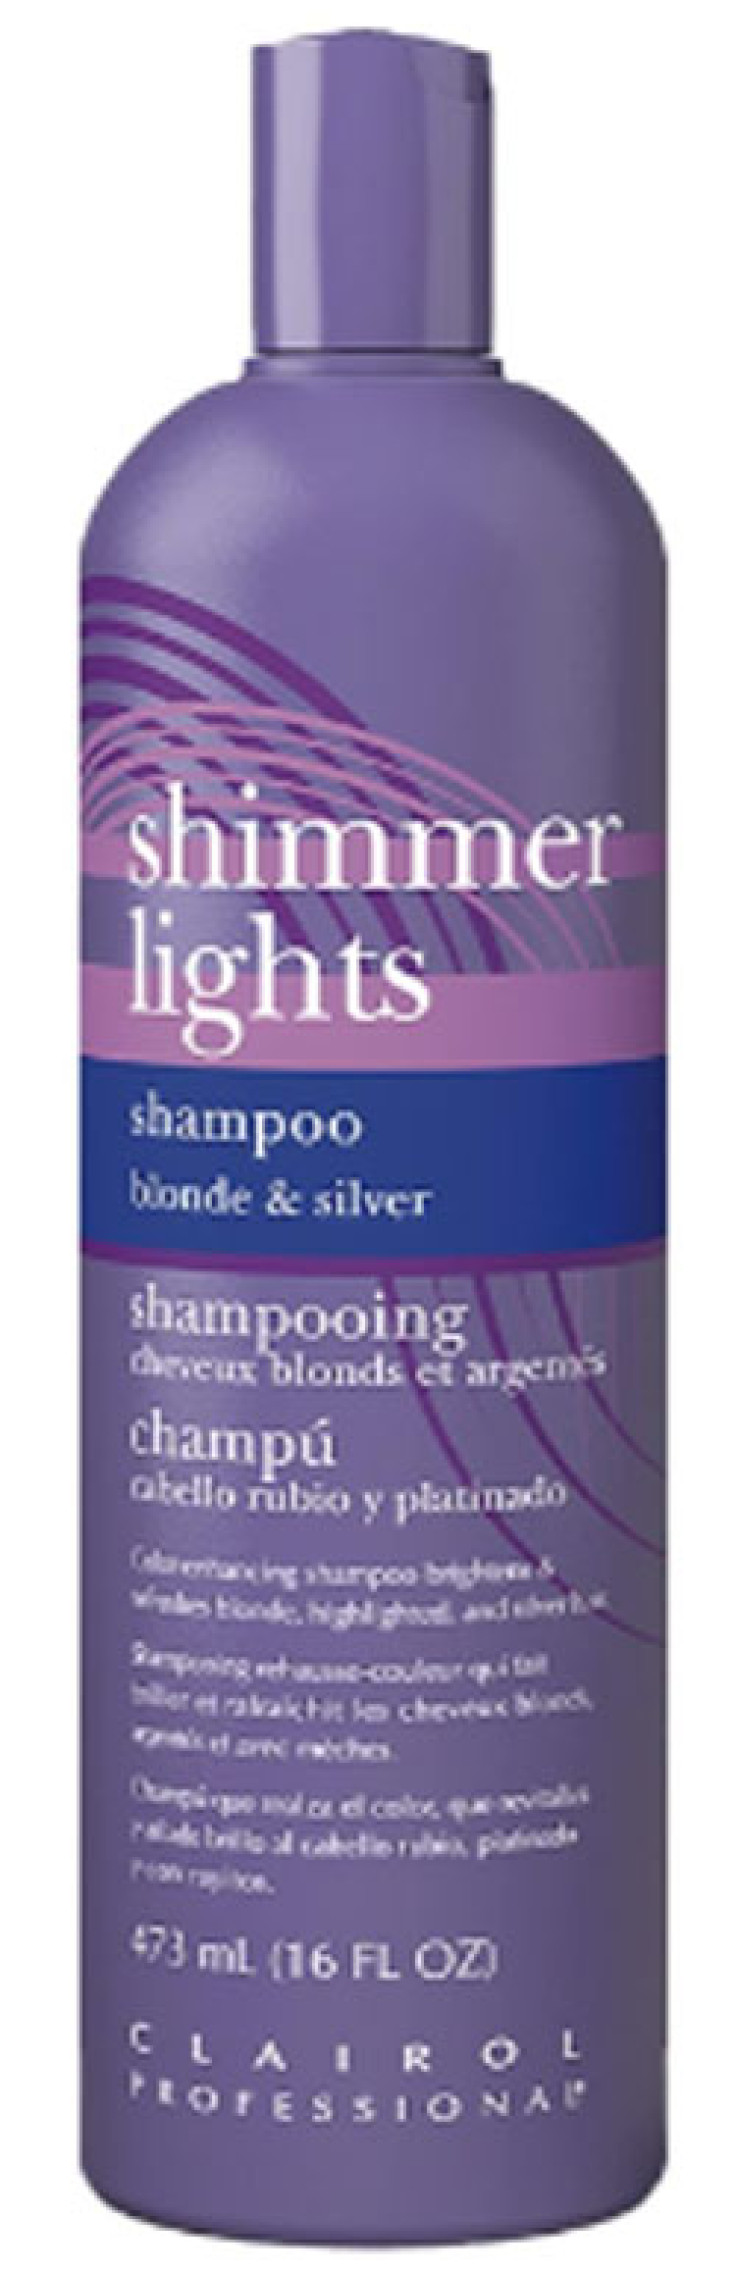 Shimmer Lights - Affiliate